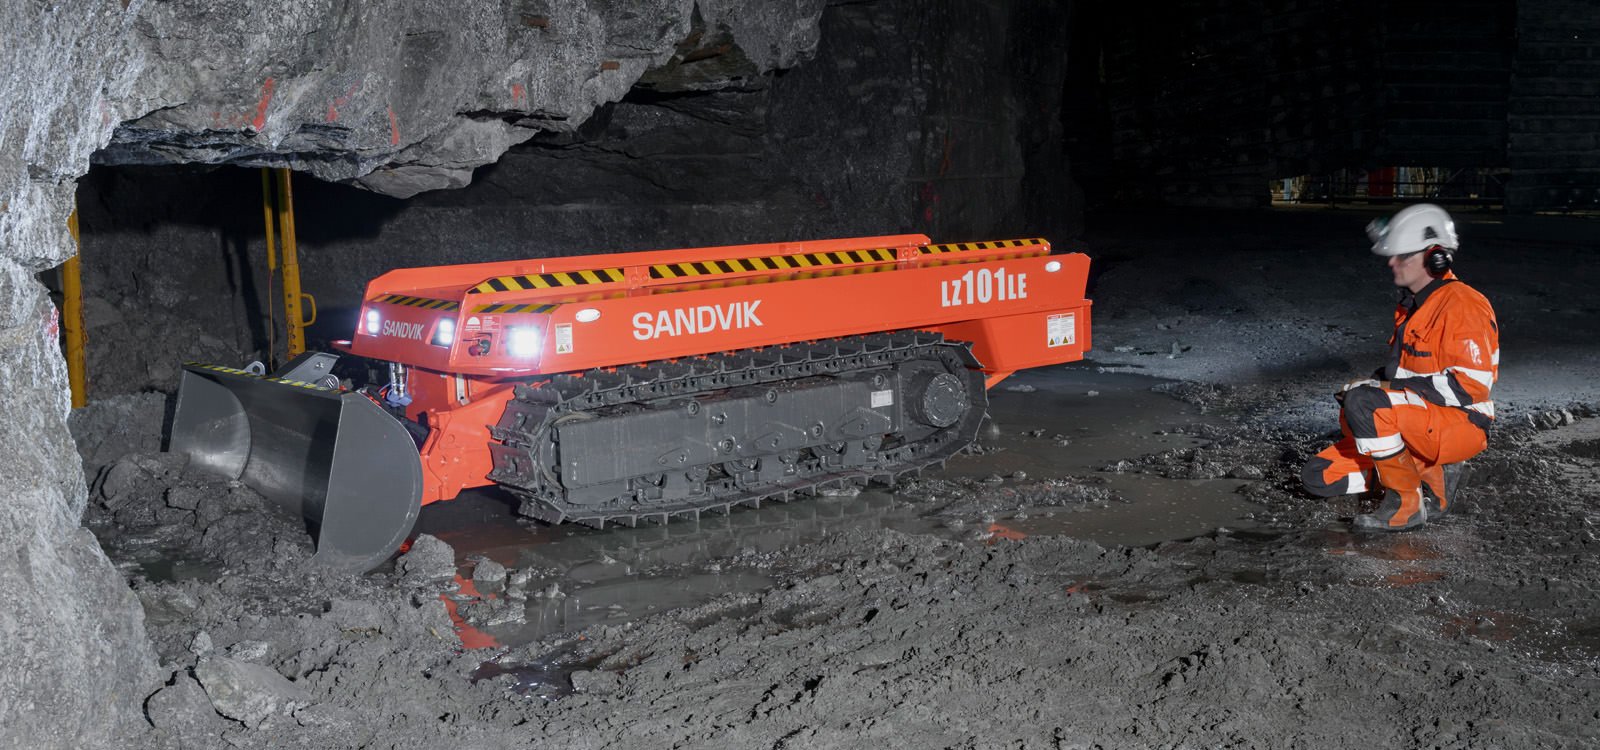 <p>山特维克LZ101LE采用远程操作，使操作员可远离矿场中未加支护的危险区域。</p>
